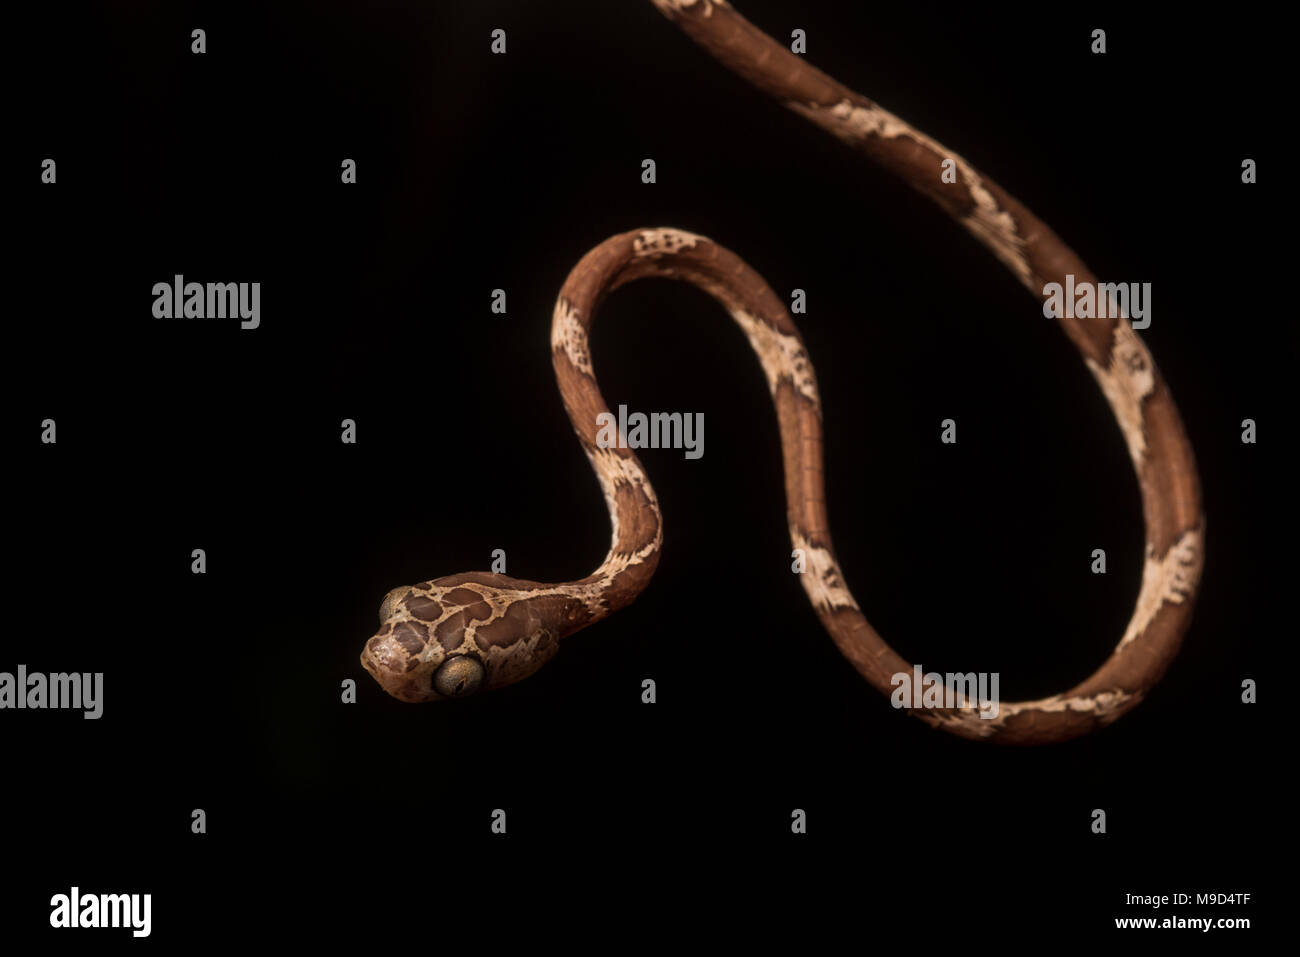 Un serpent (Imantodes sa tête cenchoa) trouvés dans la nuit dans la jungle péruvienne, elle est suspendue dans l'obscurité. Banque D'Images